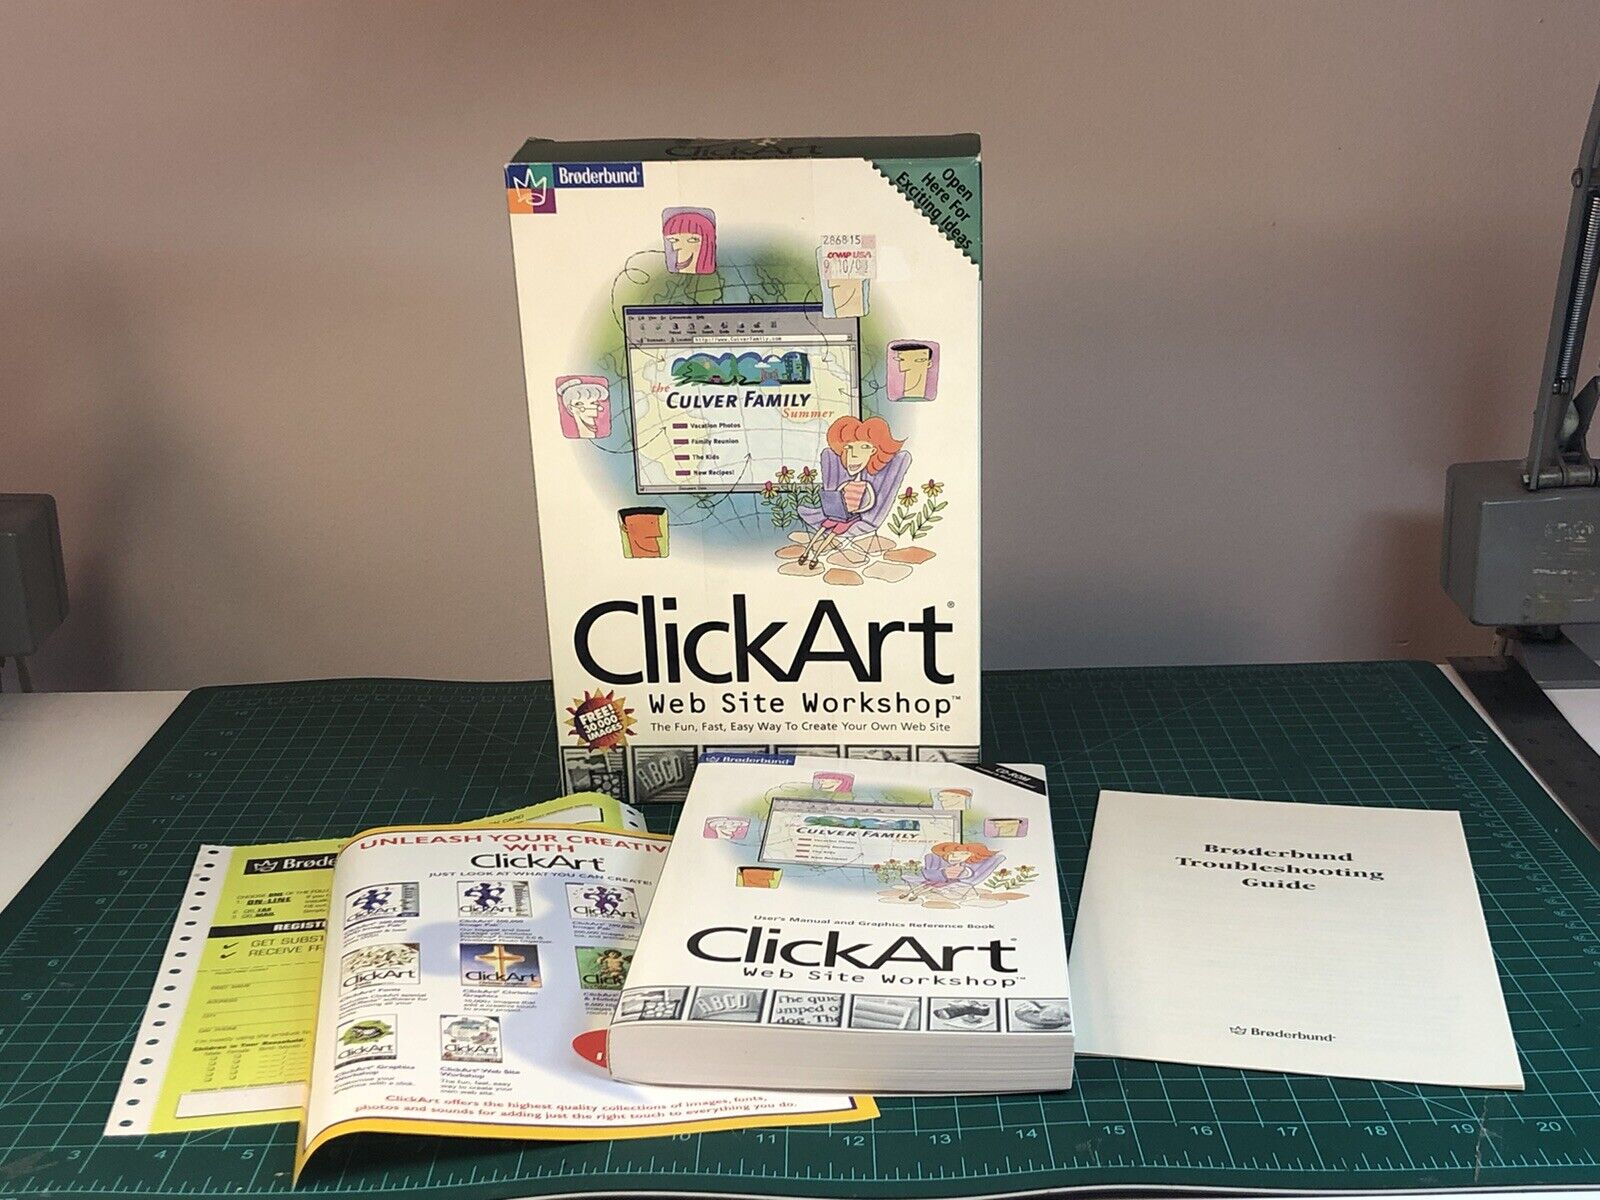 CLICKART Web Site Workshop 1998 Broderbund CLIP ART Windows CD COMPLETE IN BOX